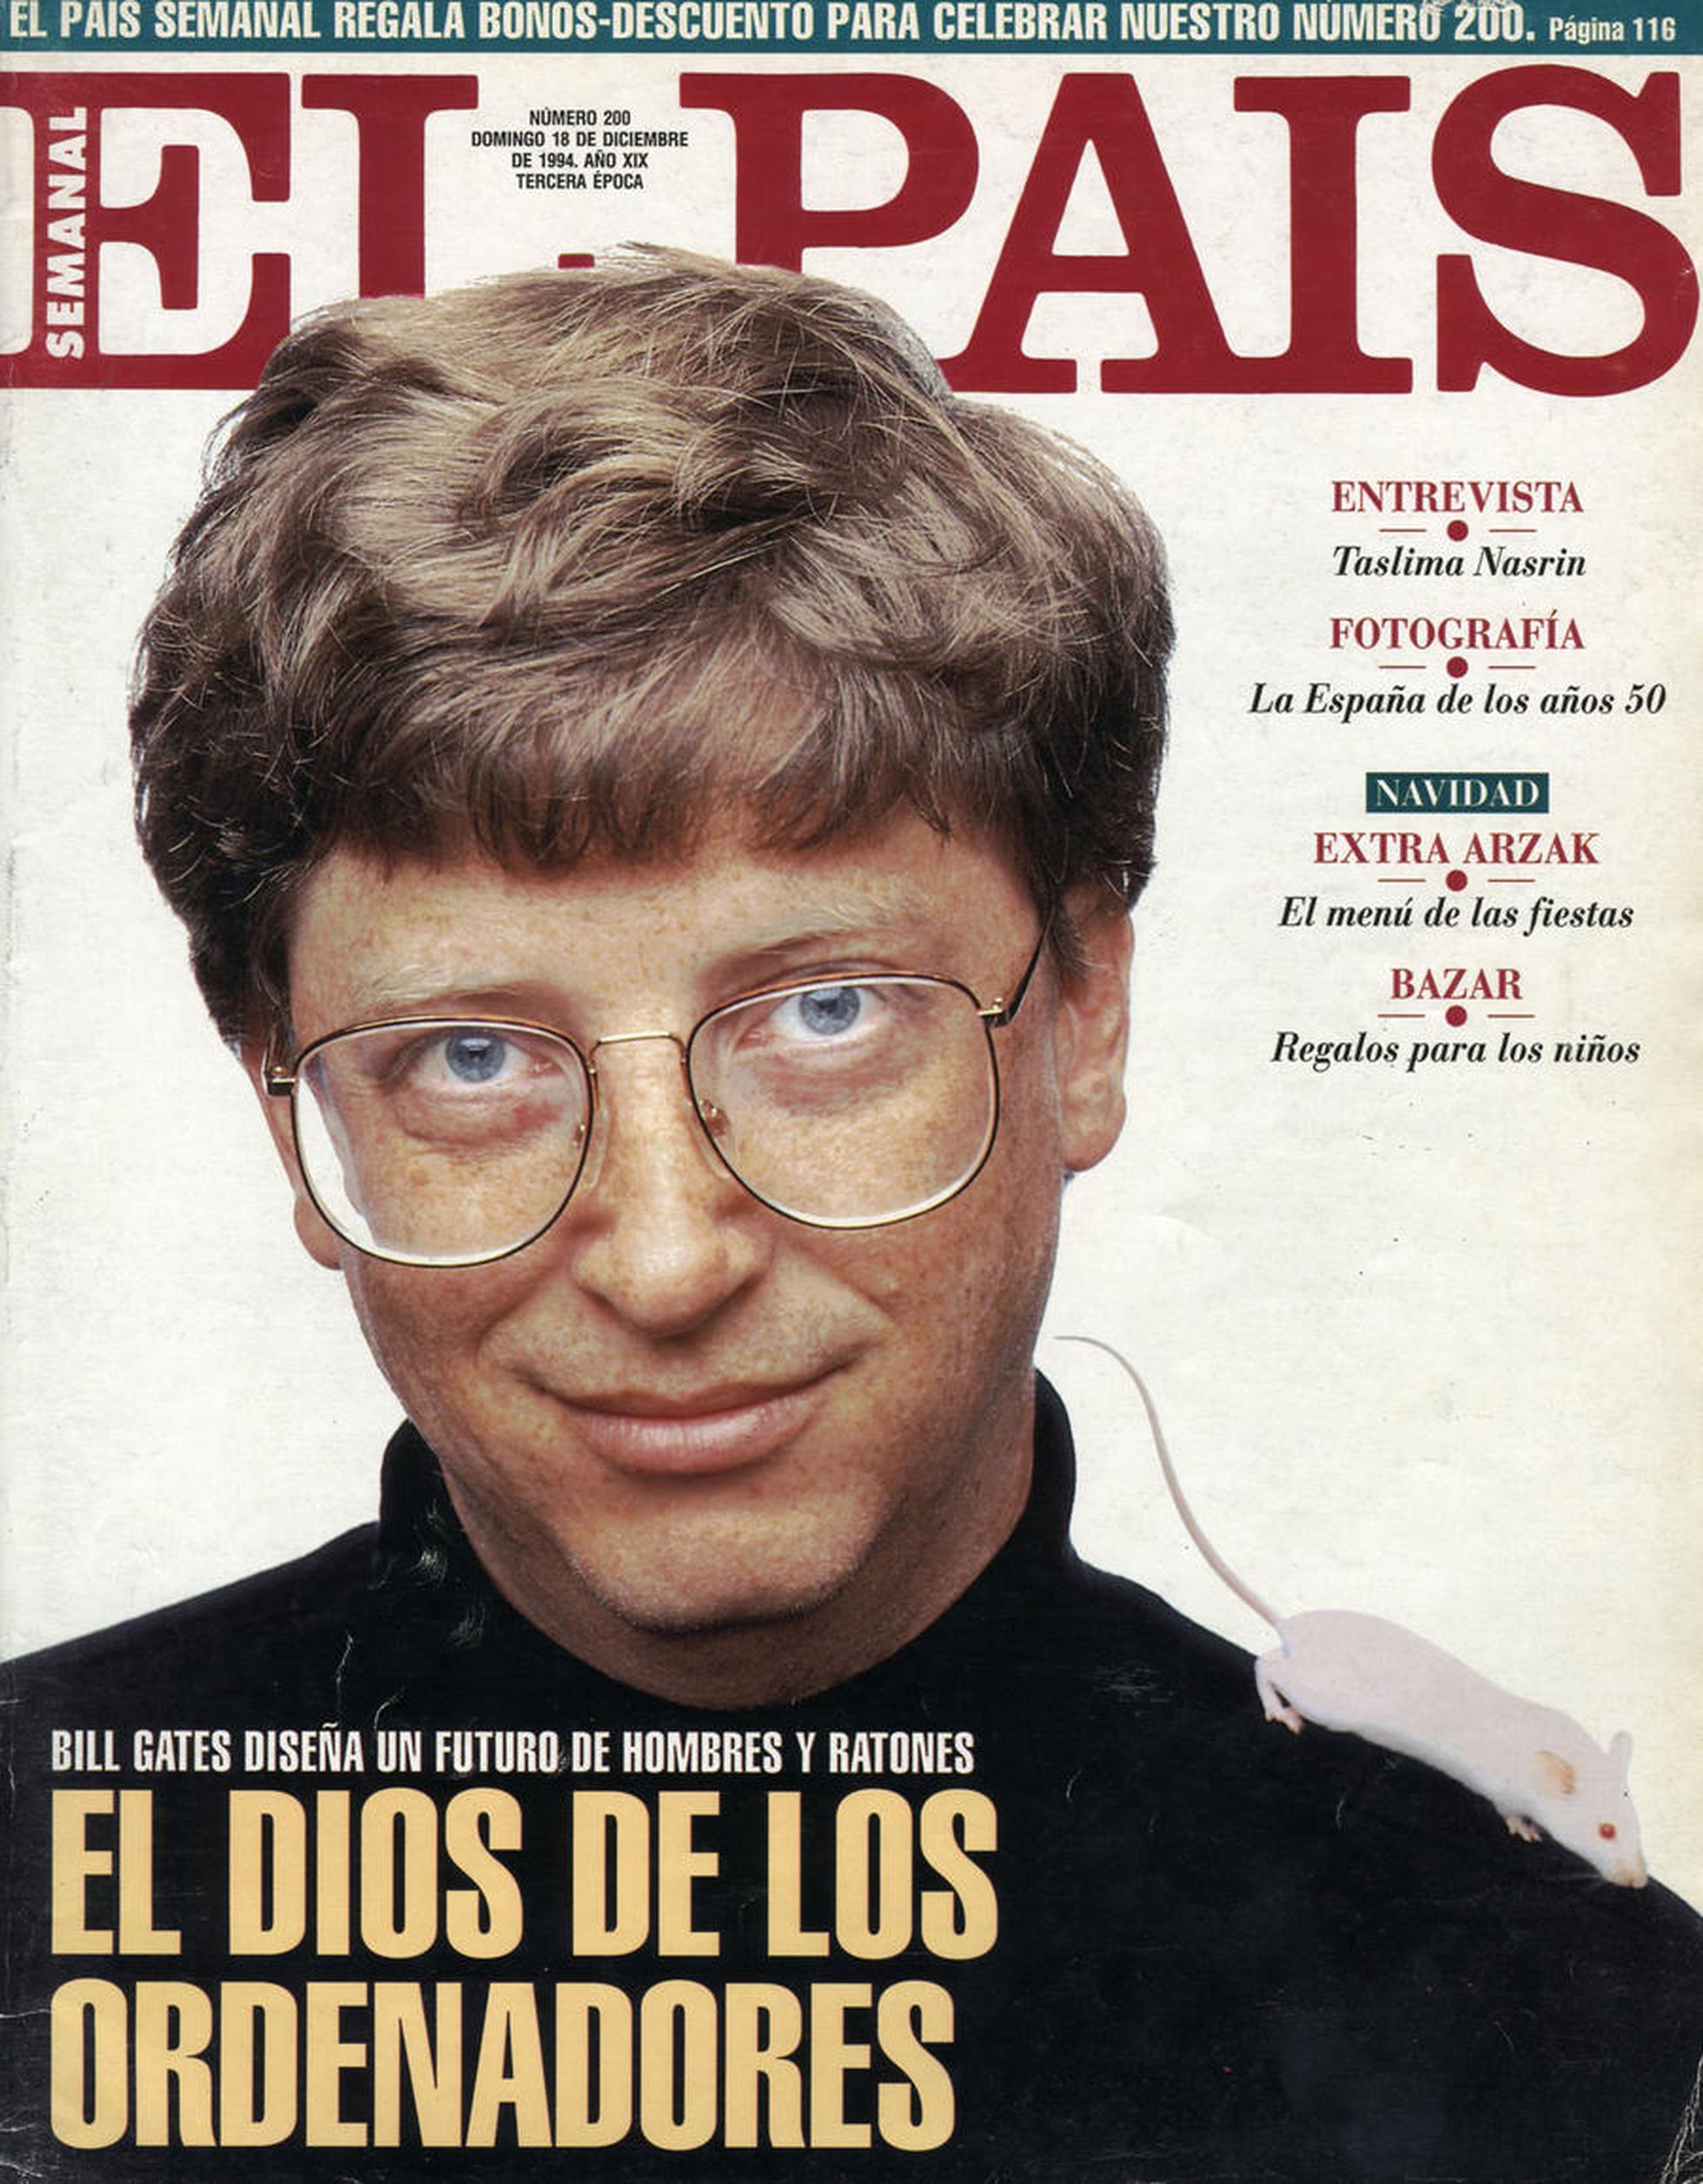 Bill Gates, en la portada de El País Semanal en 1994.